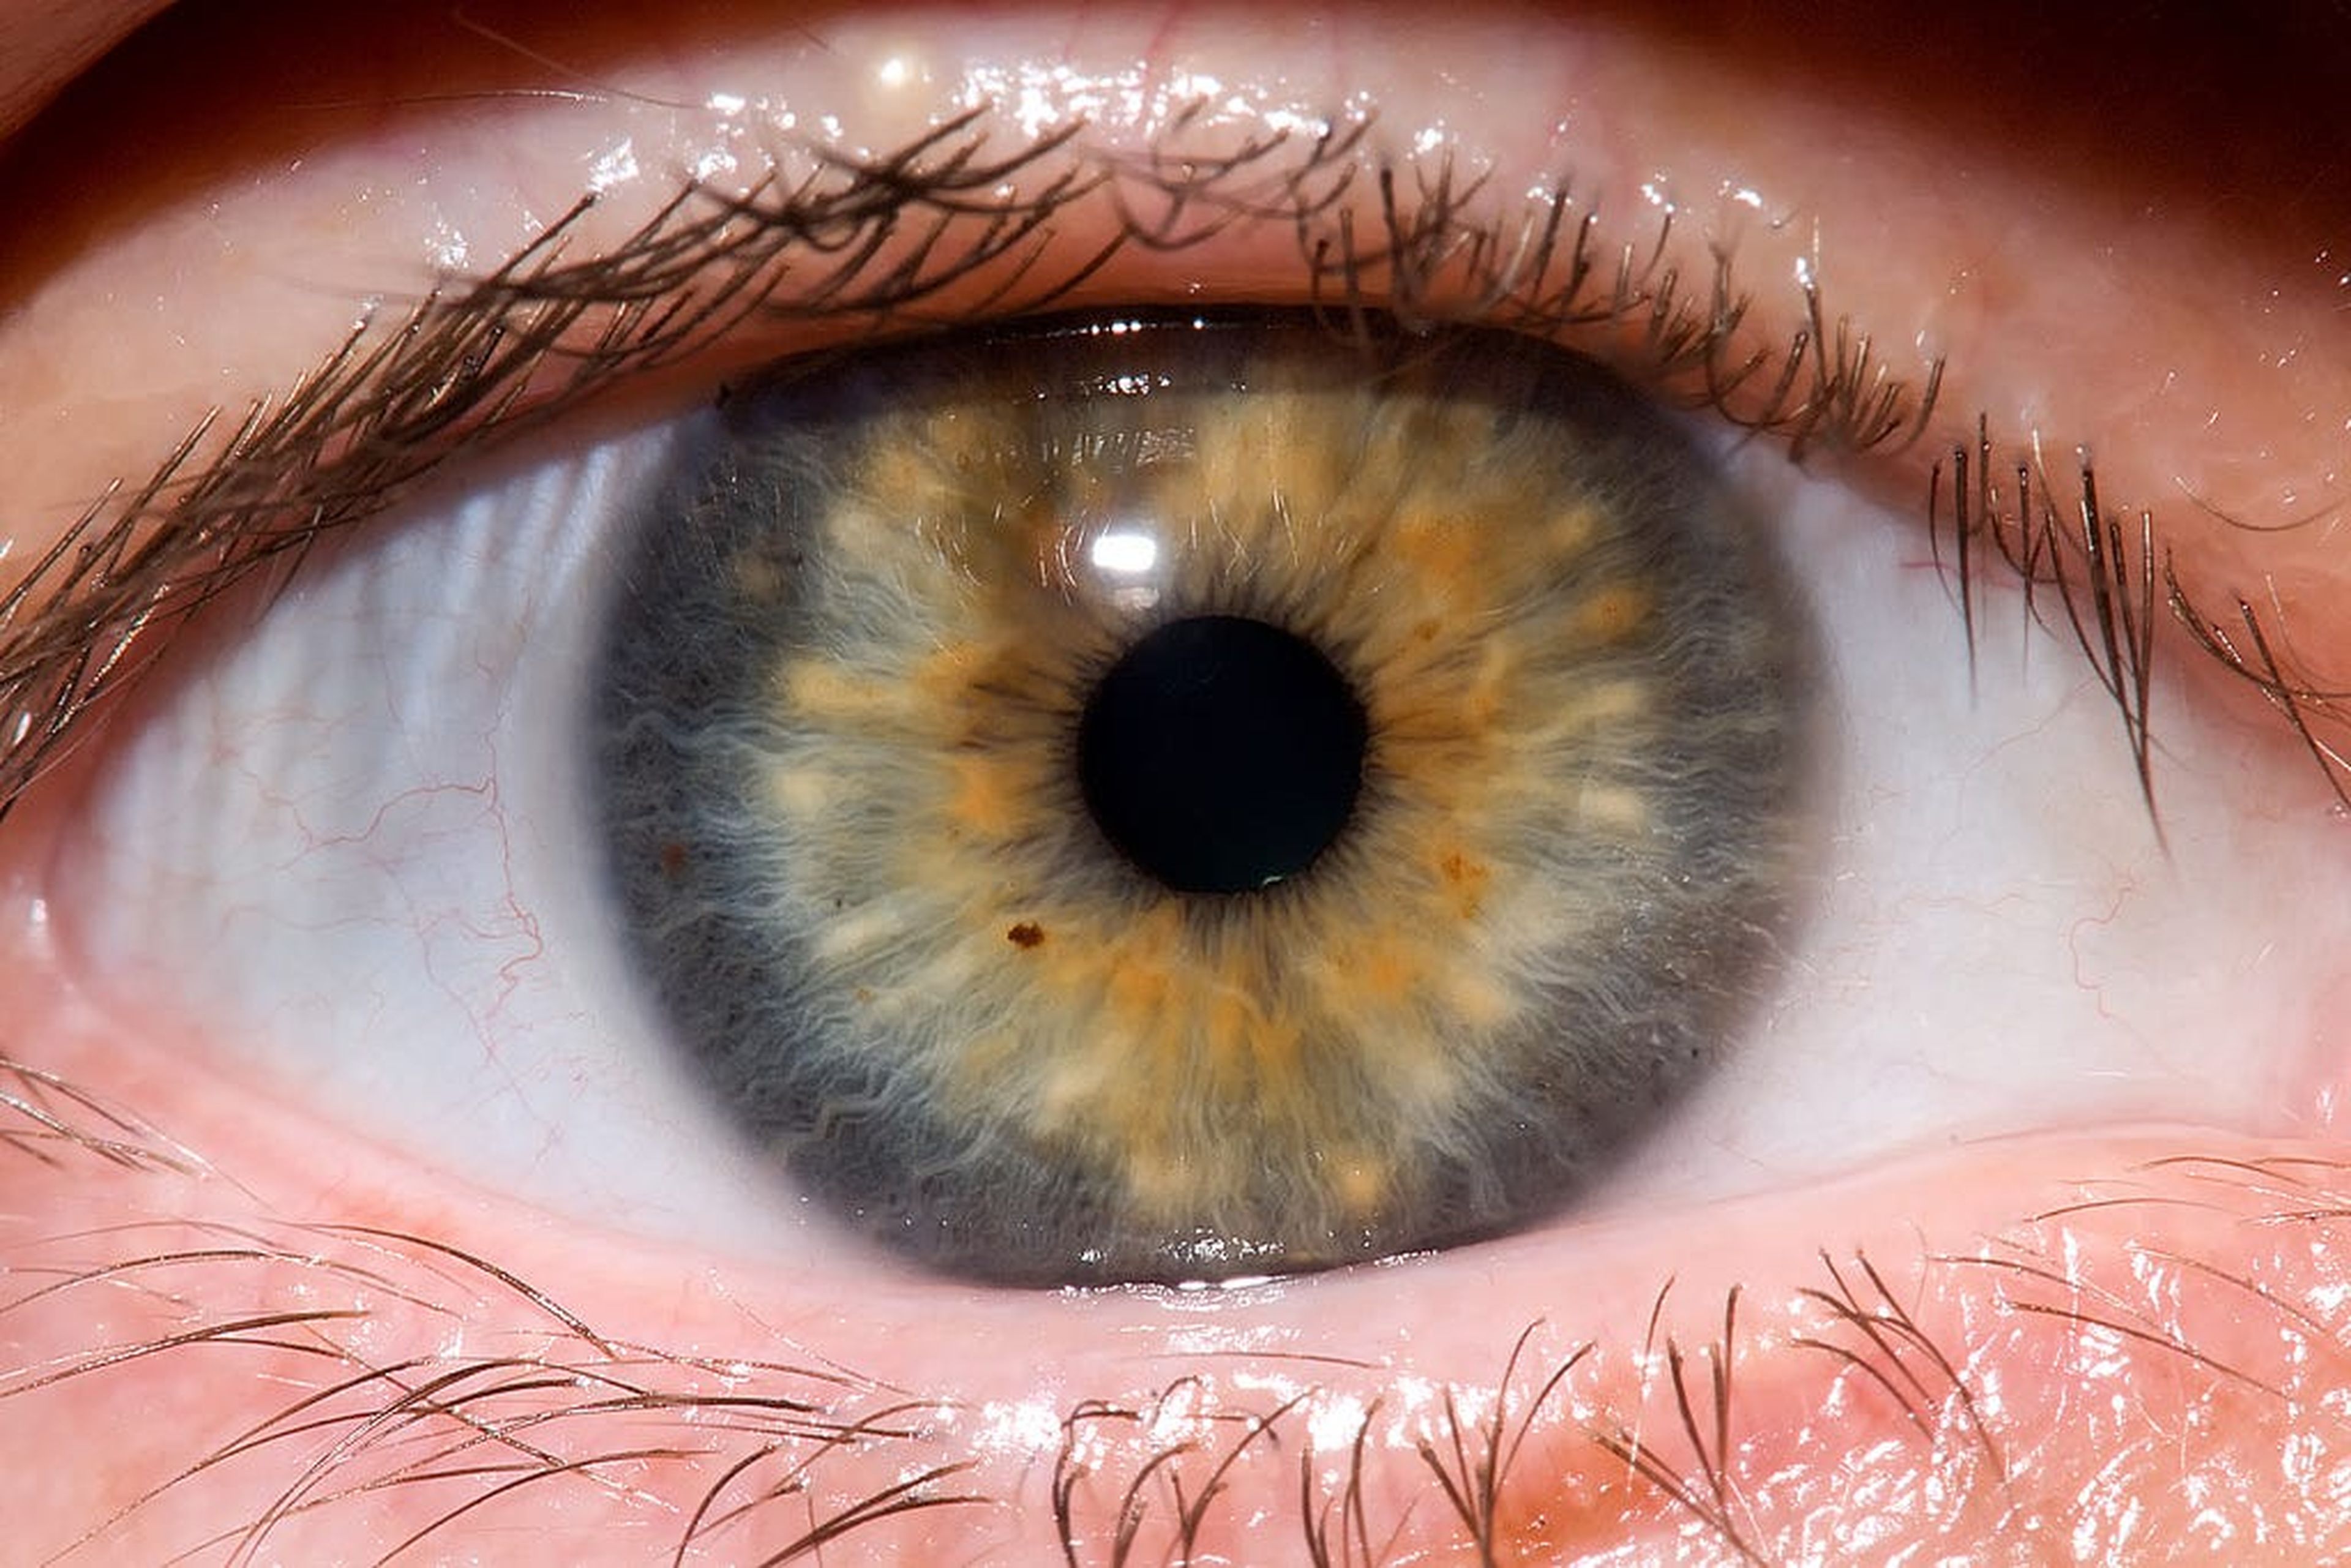 Los lazos pueden aumentar la presión ocular intraocular, que se considera un factor de riesgo de glaucoma y cataratas.